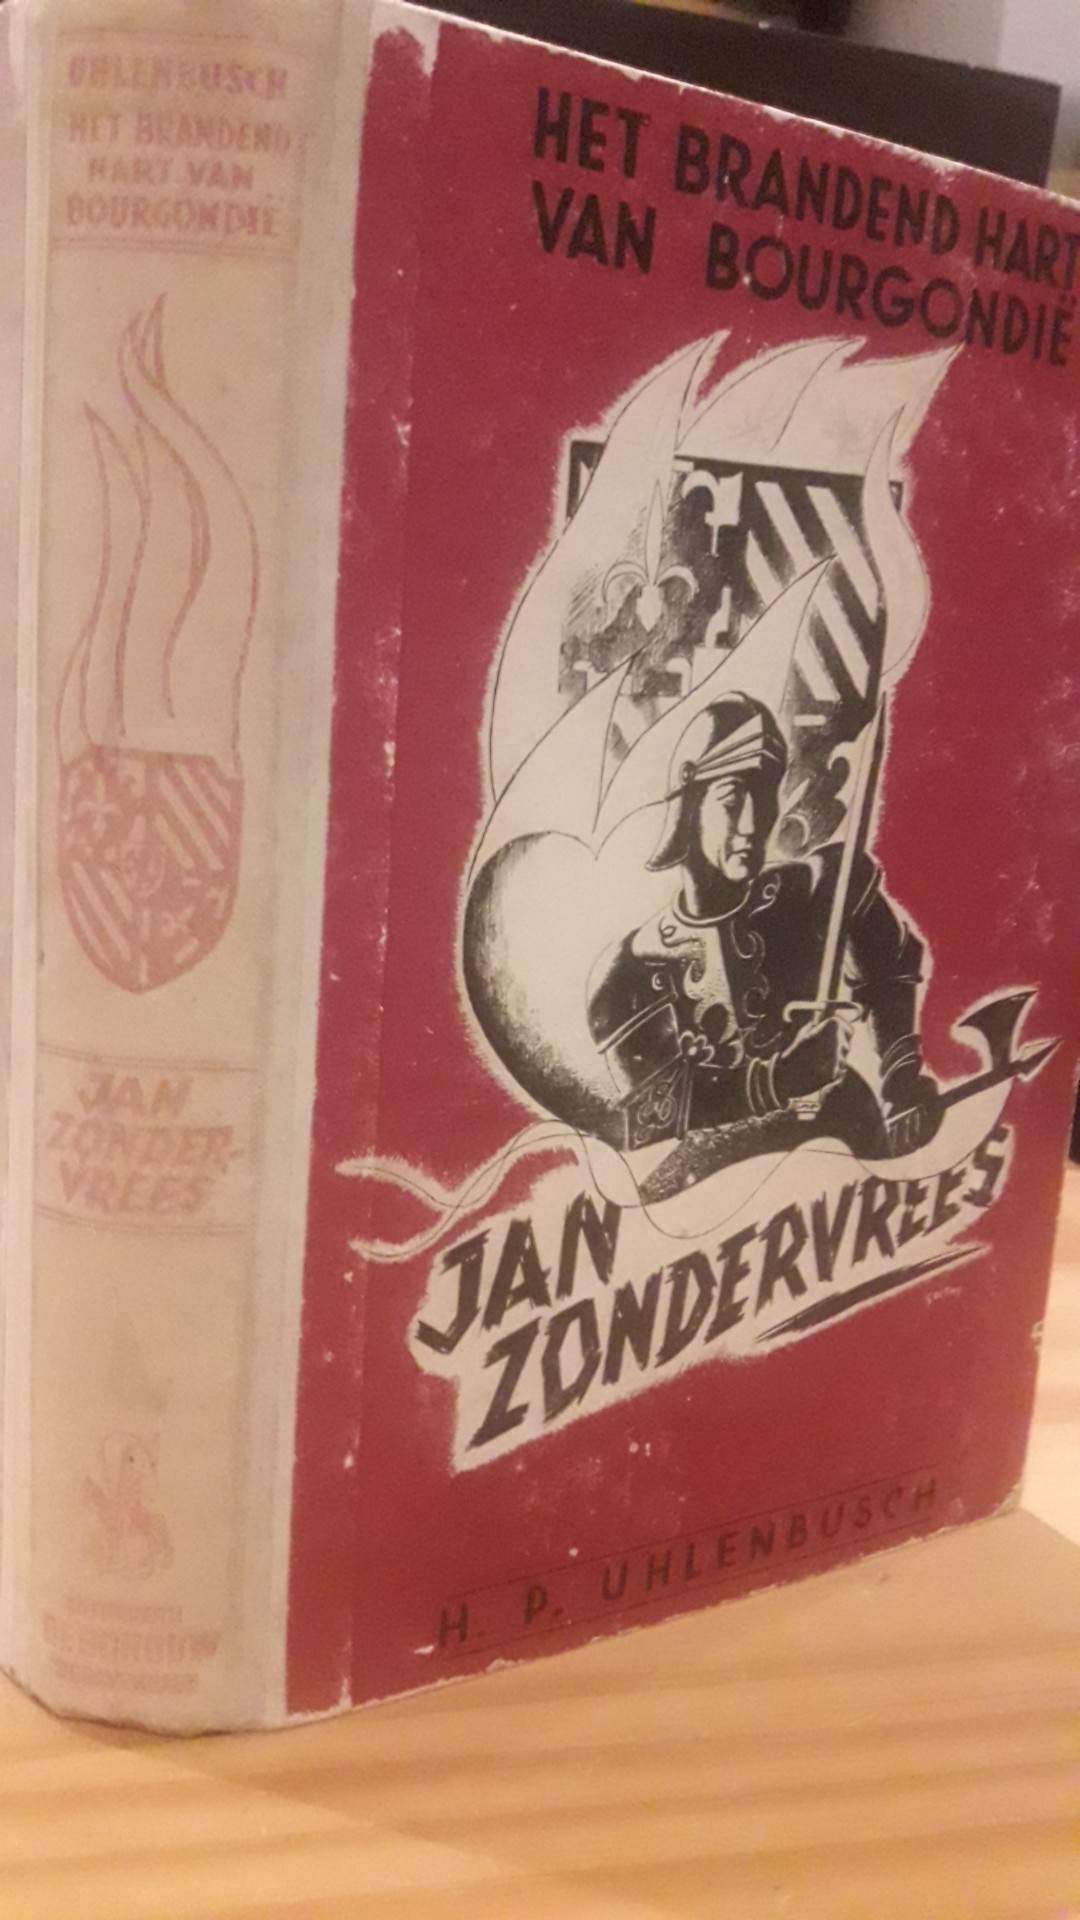 ZELDZAAM ! - Jan zonder vrees  - 274 blz / DE SCHOUW 1944 Nederlandse collaboratie uitgeverij